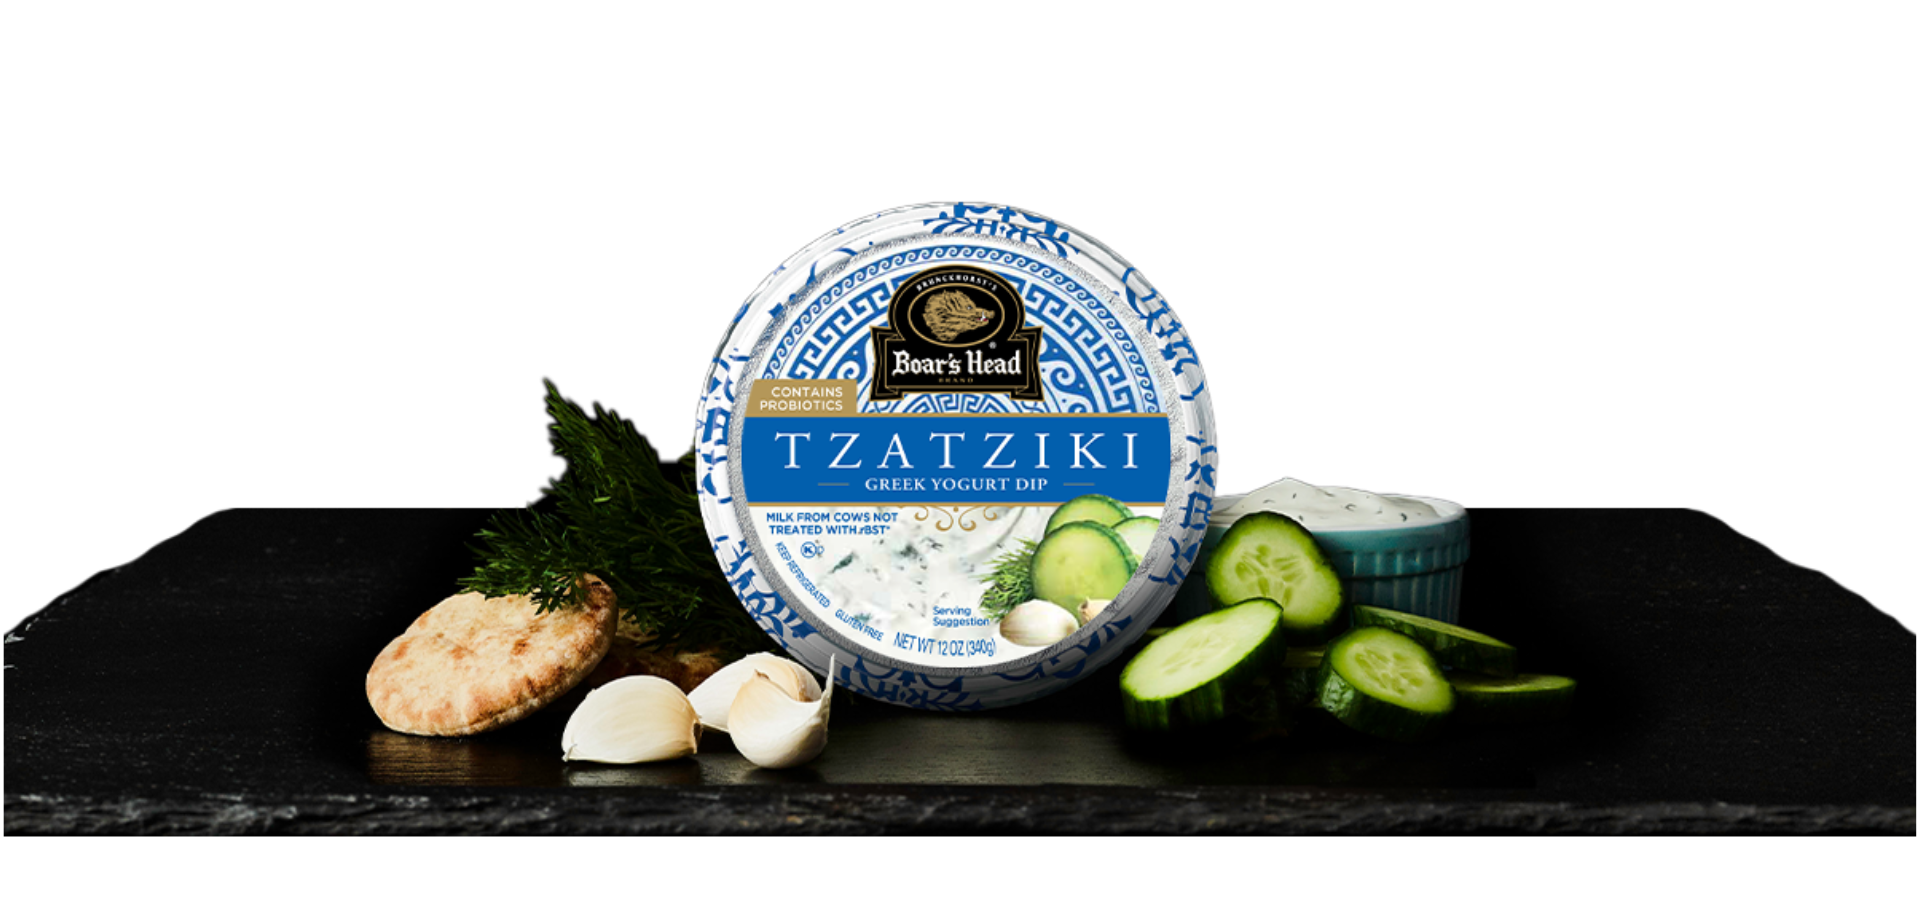 Vista del empaque de Tzatziki Greek Yogurt Dip